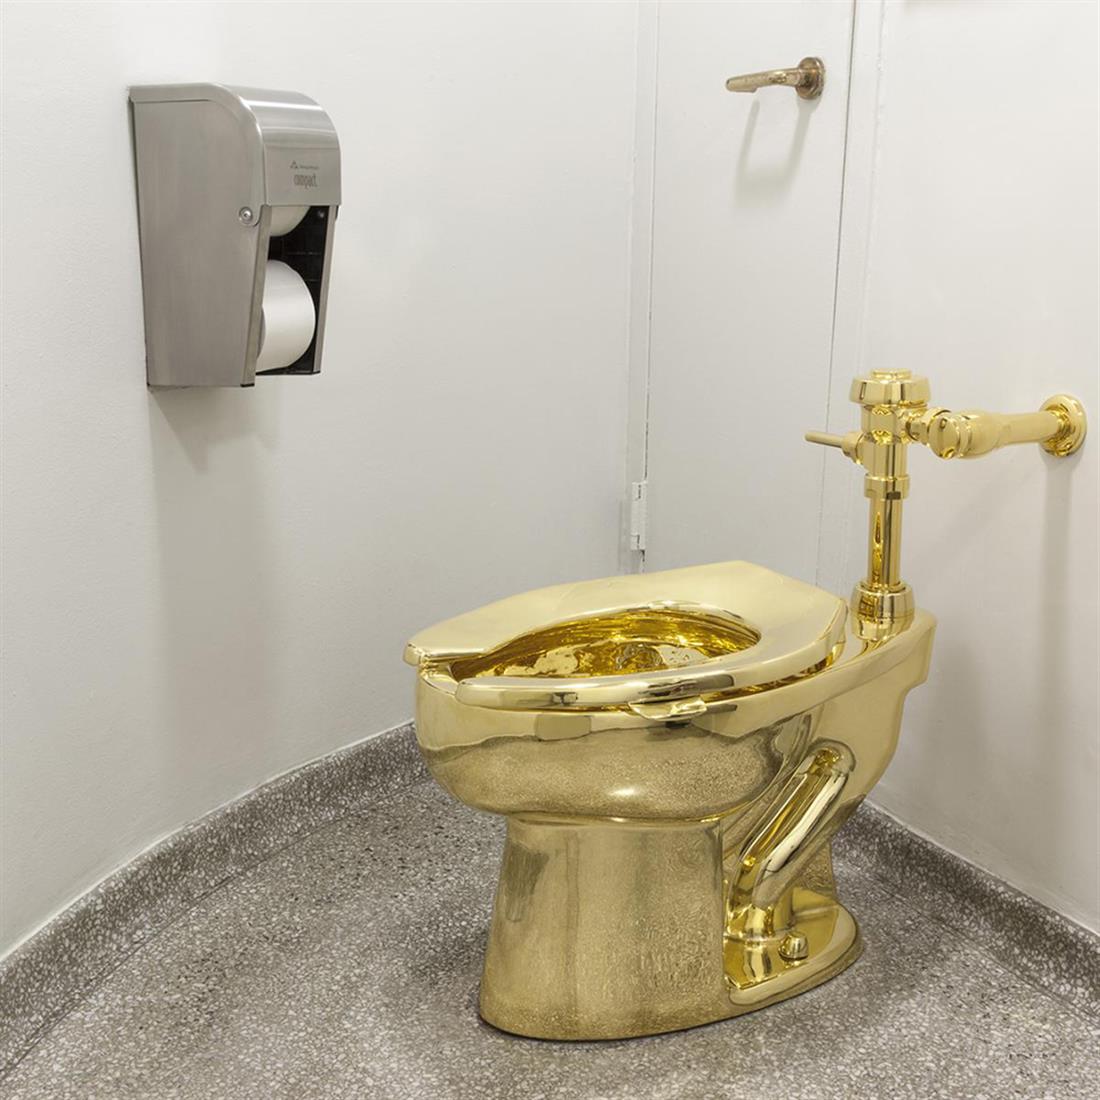 τουαλέτα - χρυσή - 18 καρατίων - Ανάκτορο Μπλένιμ